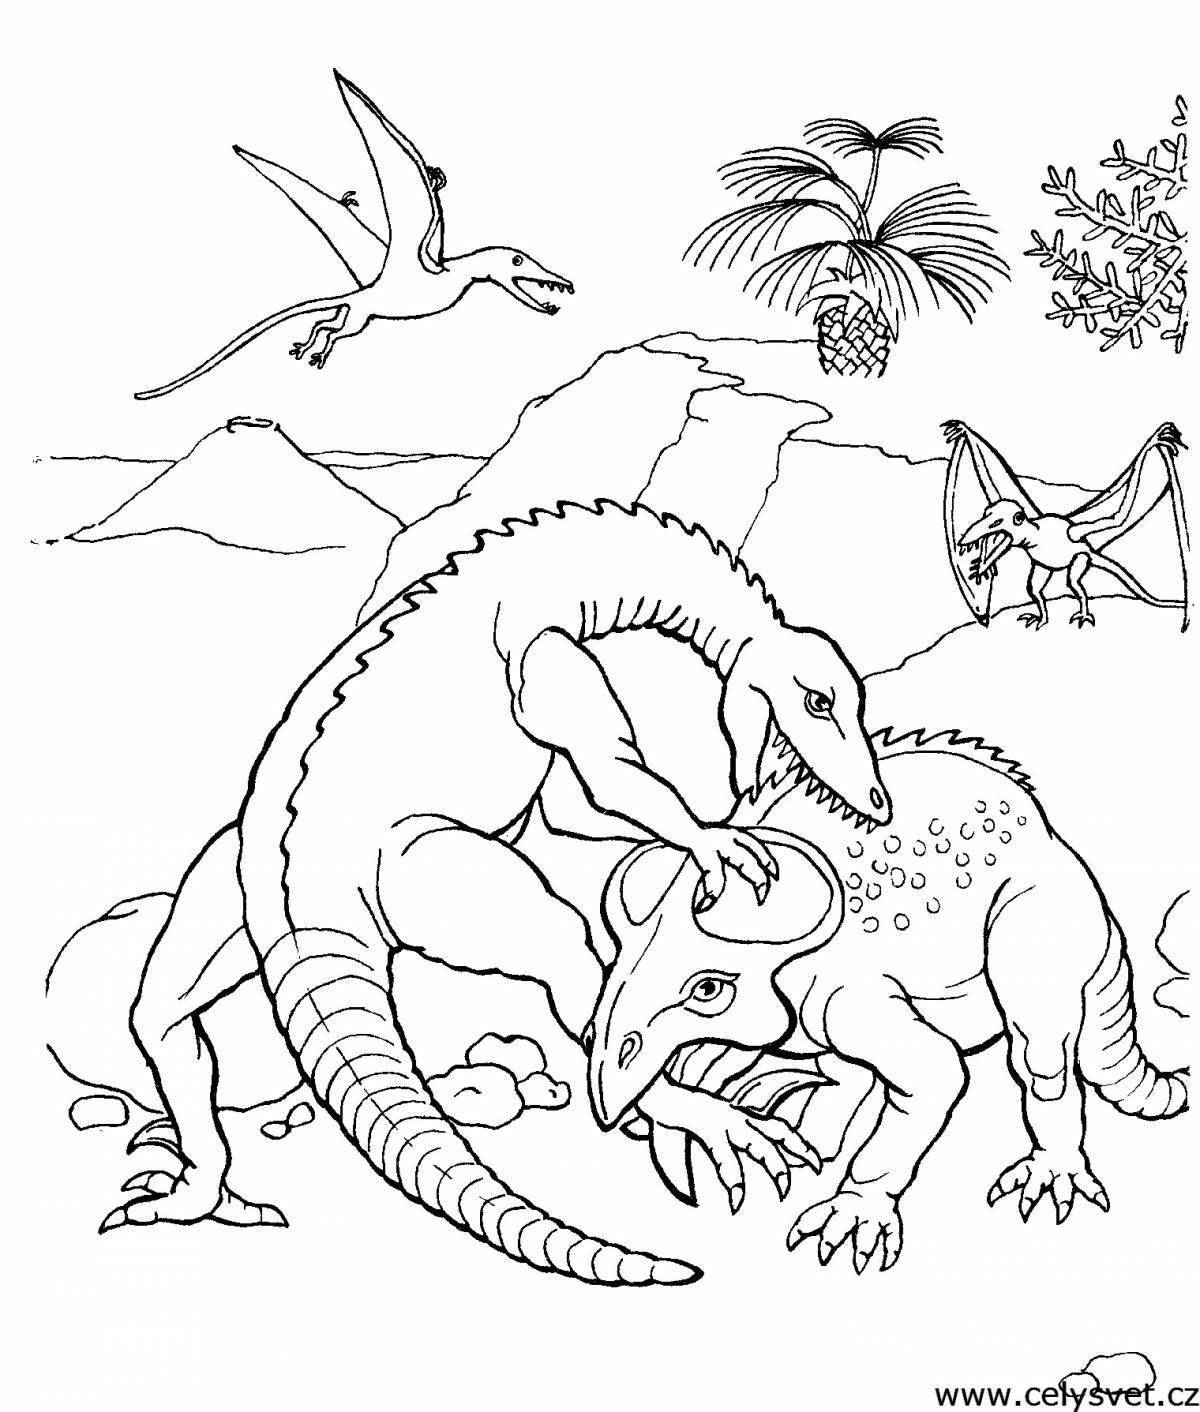 Раскраски динозавры формат а4. Динозавры / раскраска. Динозавр раскраска для детей. Раскраски для мальчиков динозавры. Динозаврики раскраска для детей.